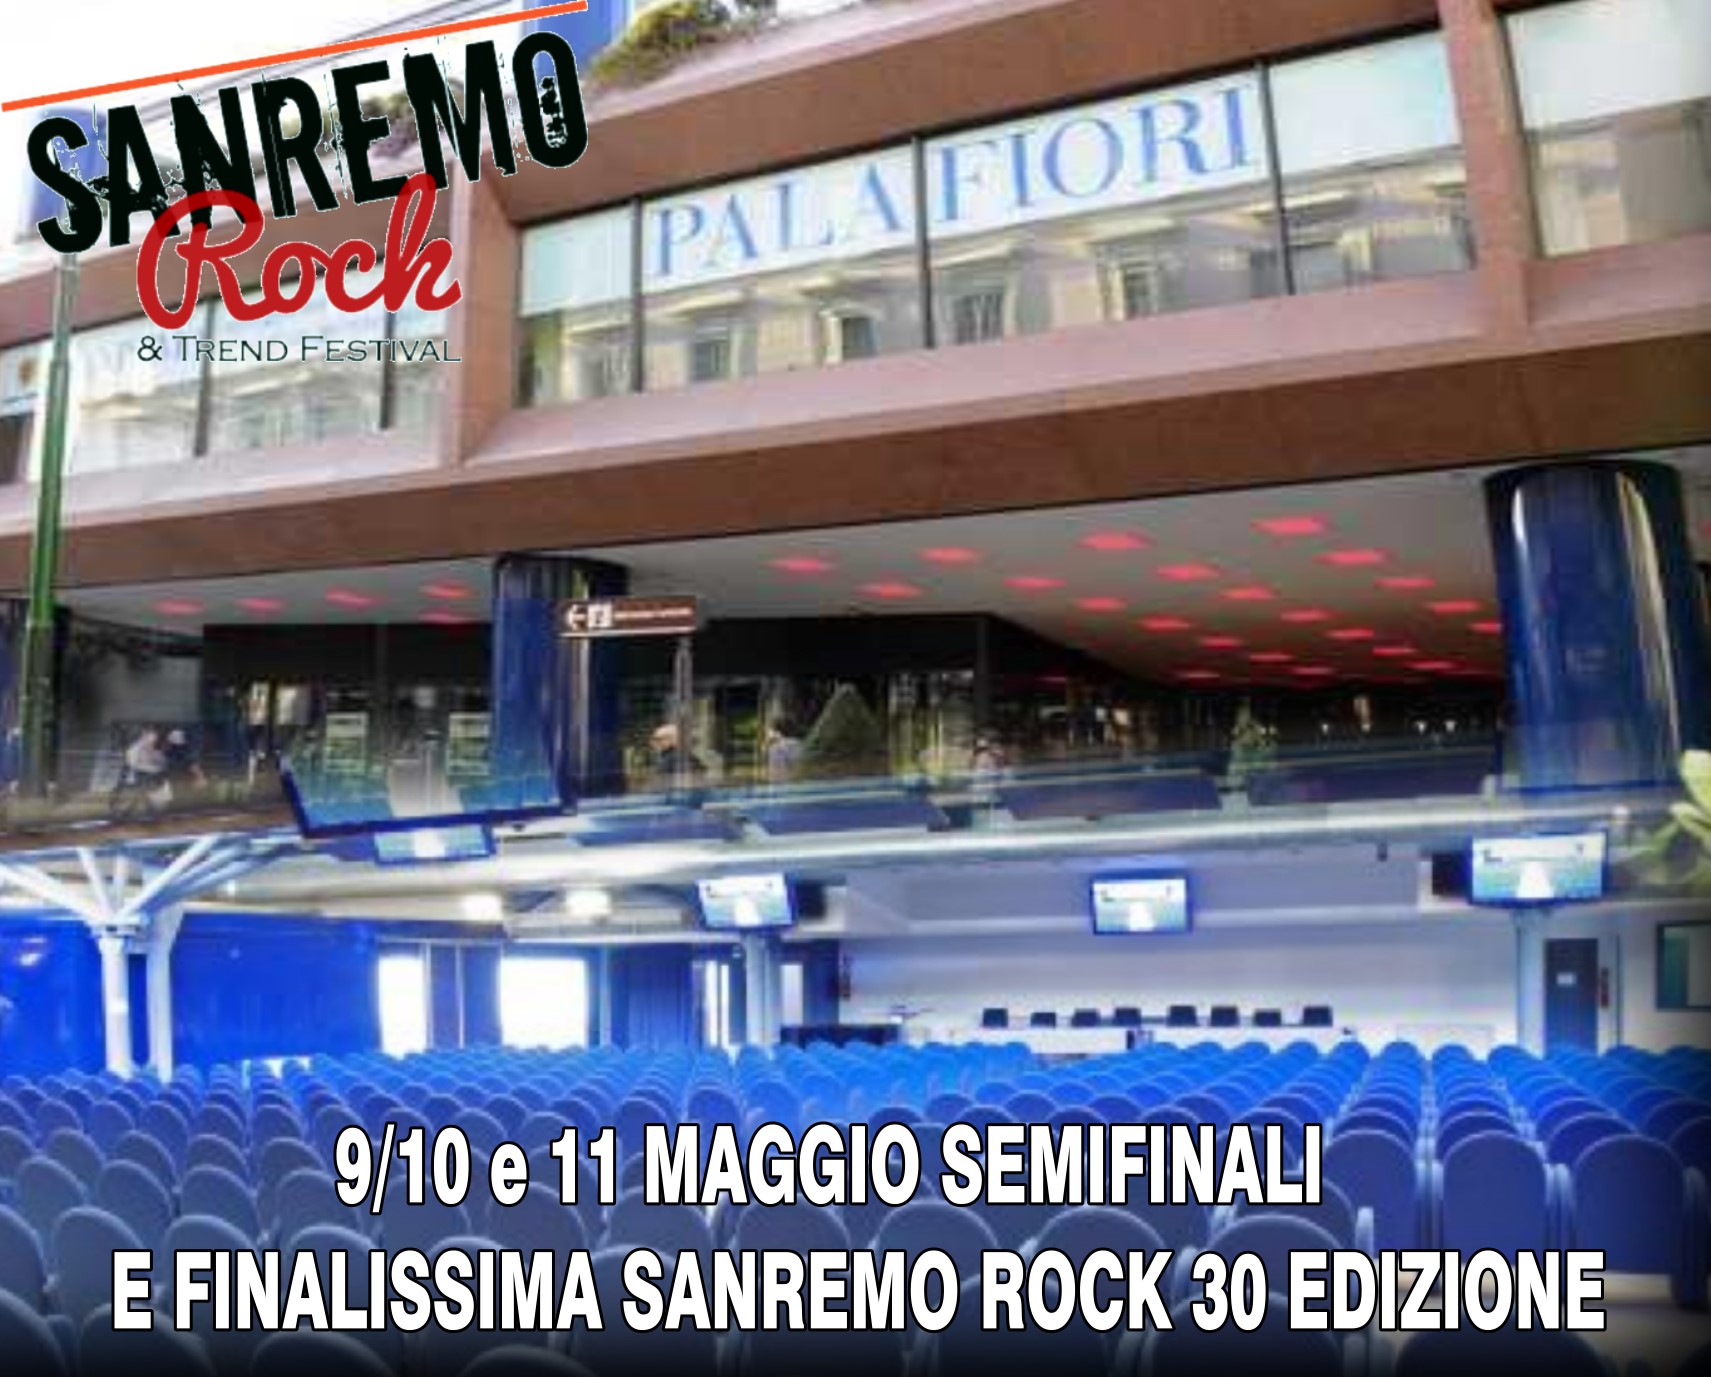 Sanremo Rock 30° Edizione dal 9 Maggio le finali al Palafiori in Sanremo.